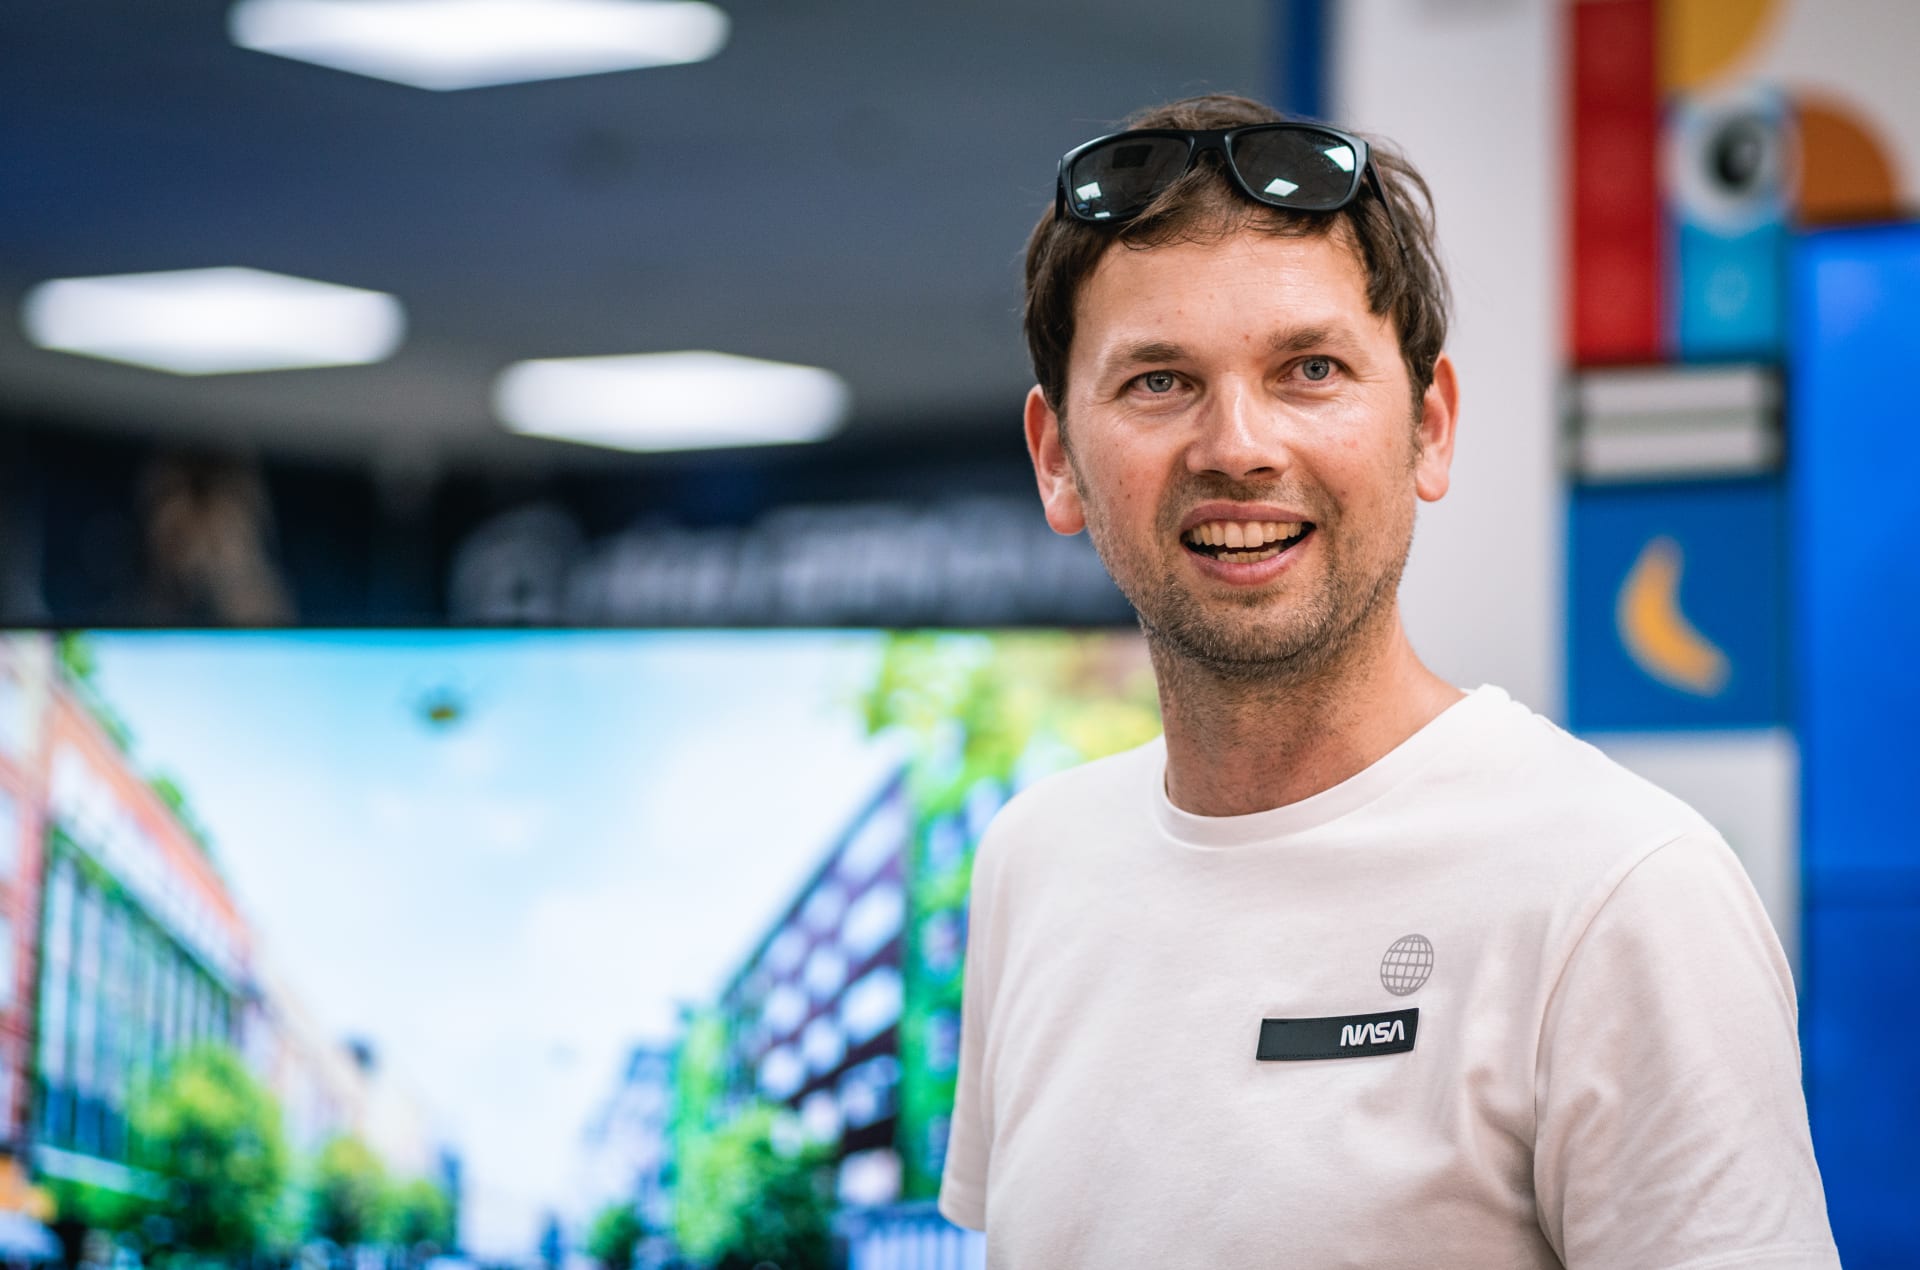 Vesmírný architekt Tomáš Rousek na slavnostním otevření Lego obchodu v Alze.